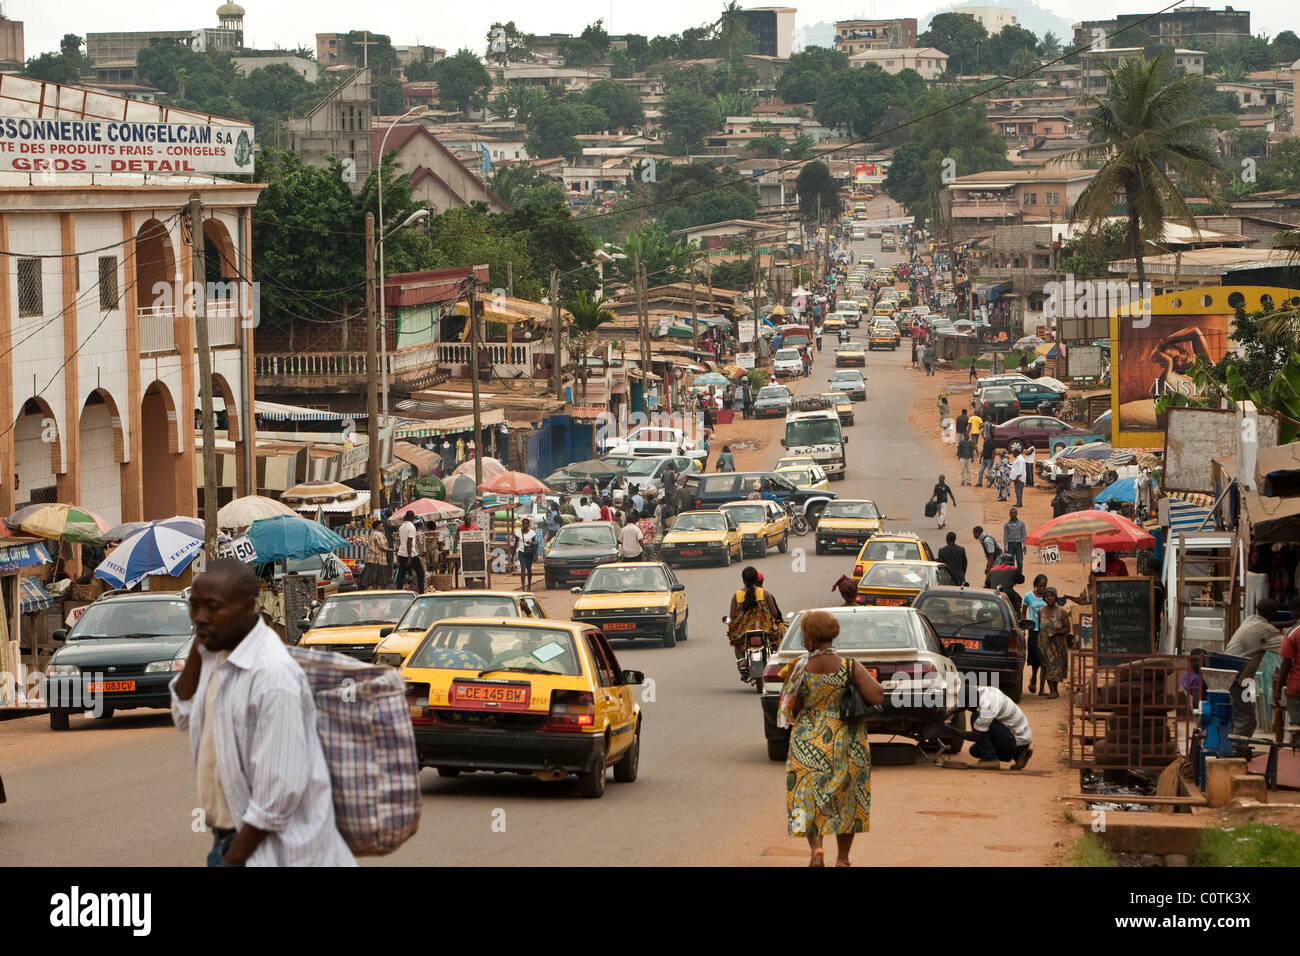 yaounde-una-ciudad-de-1-1-millones-de-habitantes-es-la-capital-de-camerun-en-el-oeste-de-africa-c0tk3x.jpg